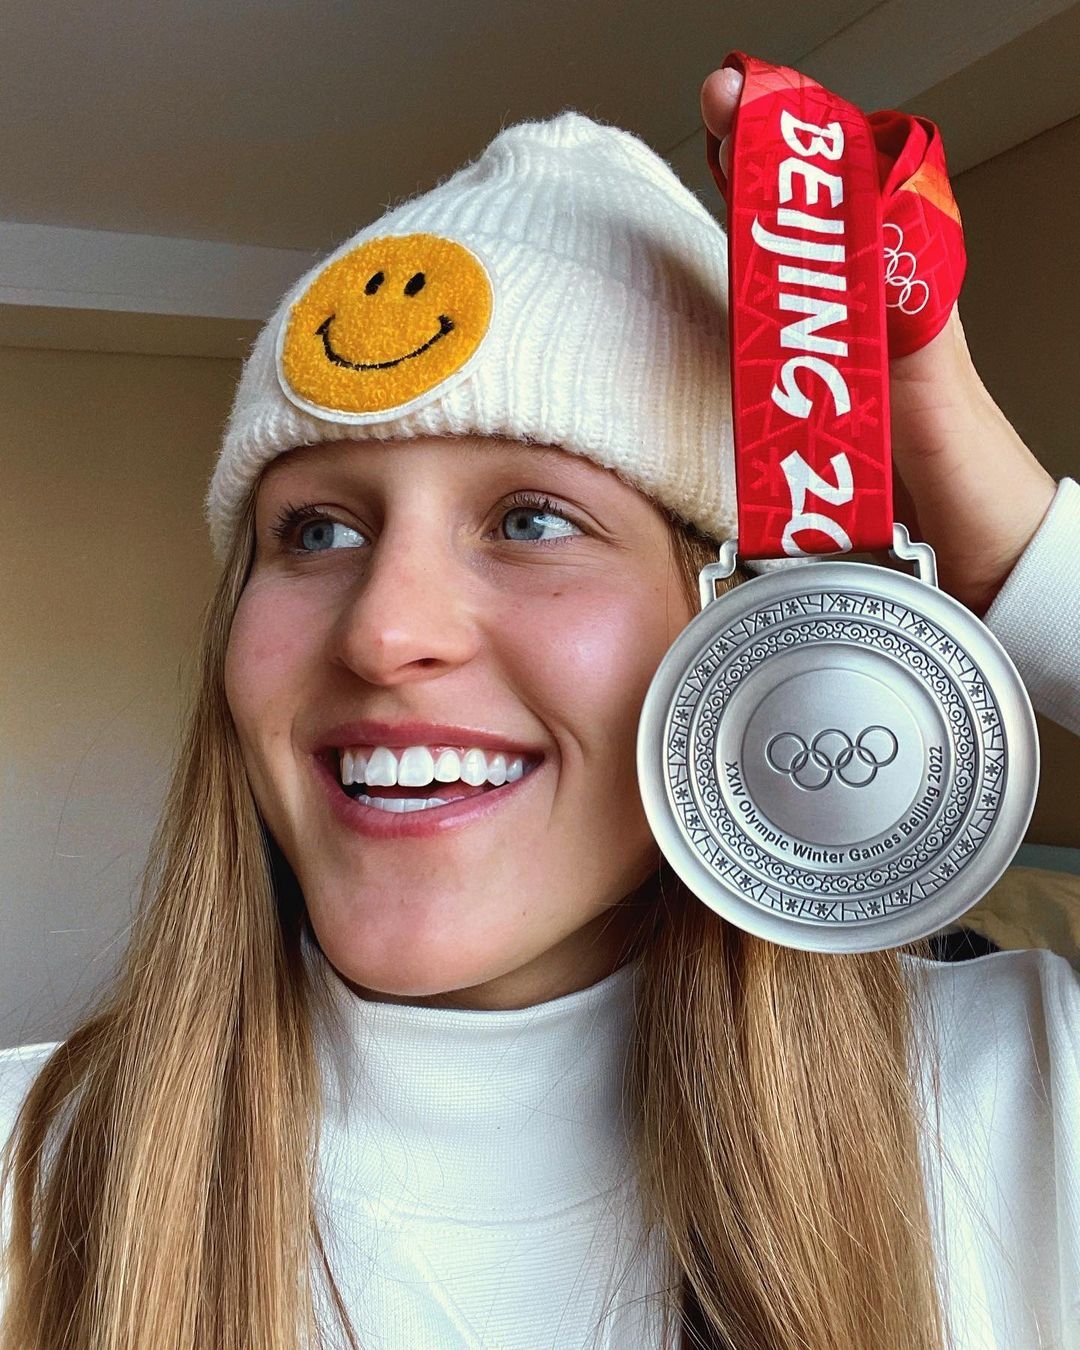 美國選手 Julia Marino 奪銀牌後受訪說自己愛吃北京冬奧的餃子：「我大概吃了 200 個餃子」